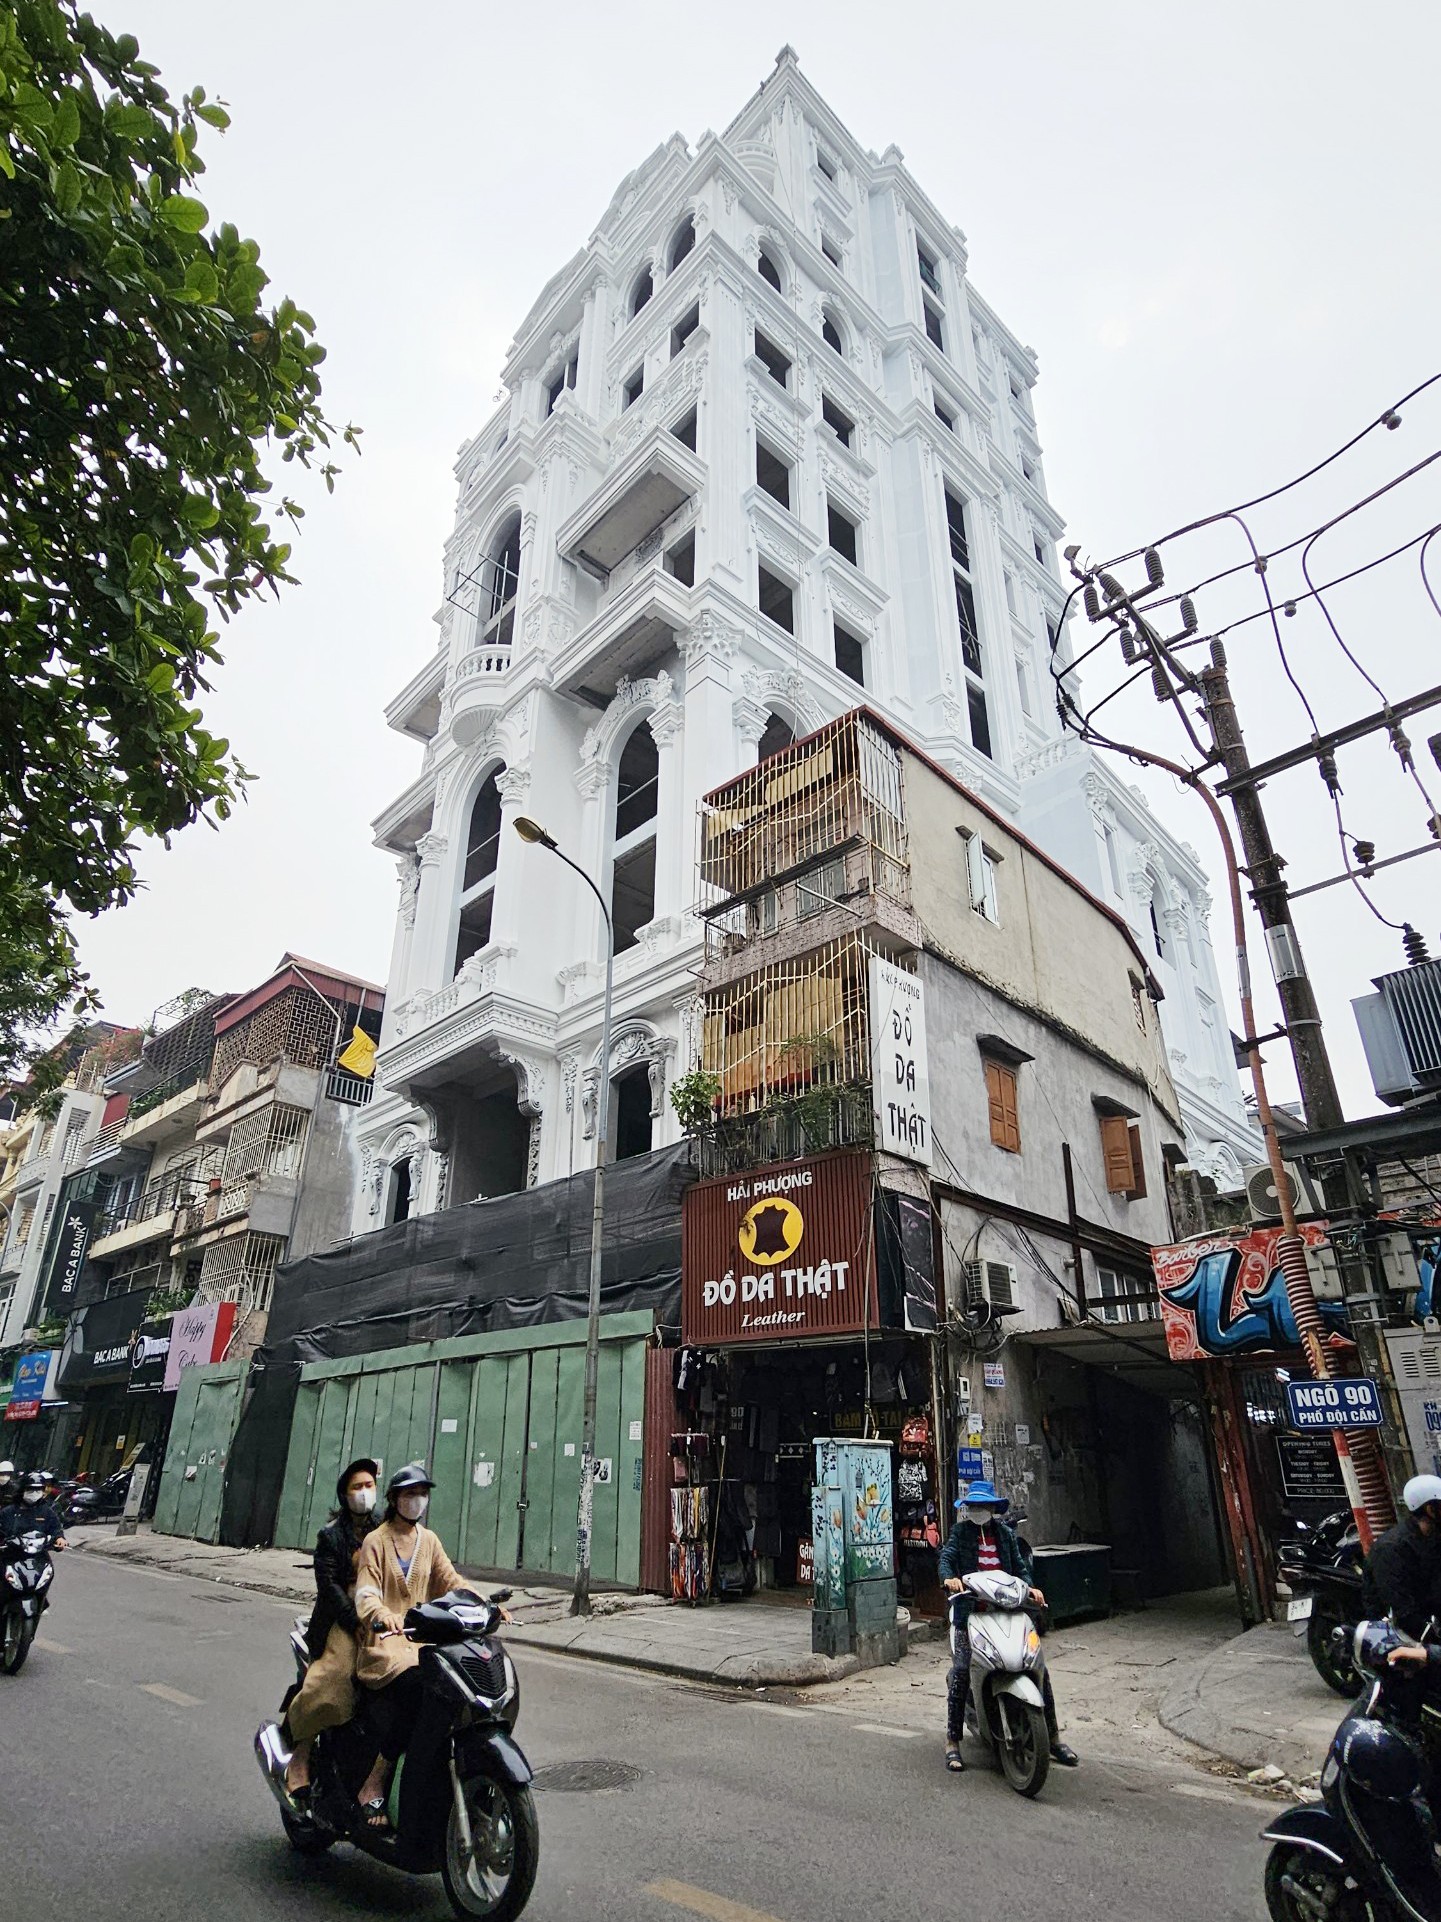 Cao ốc 10 tầng quận trung tâm không tìm thấy hồ sơ cấp phép khi Hà Nội yêu cầu làm rõ - Ảnh 11.